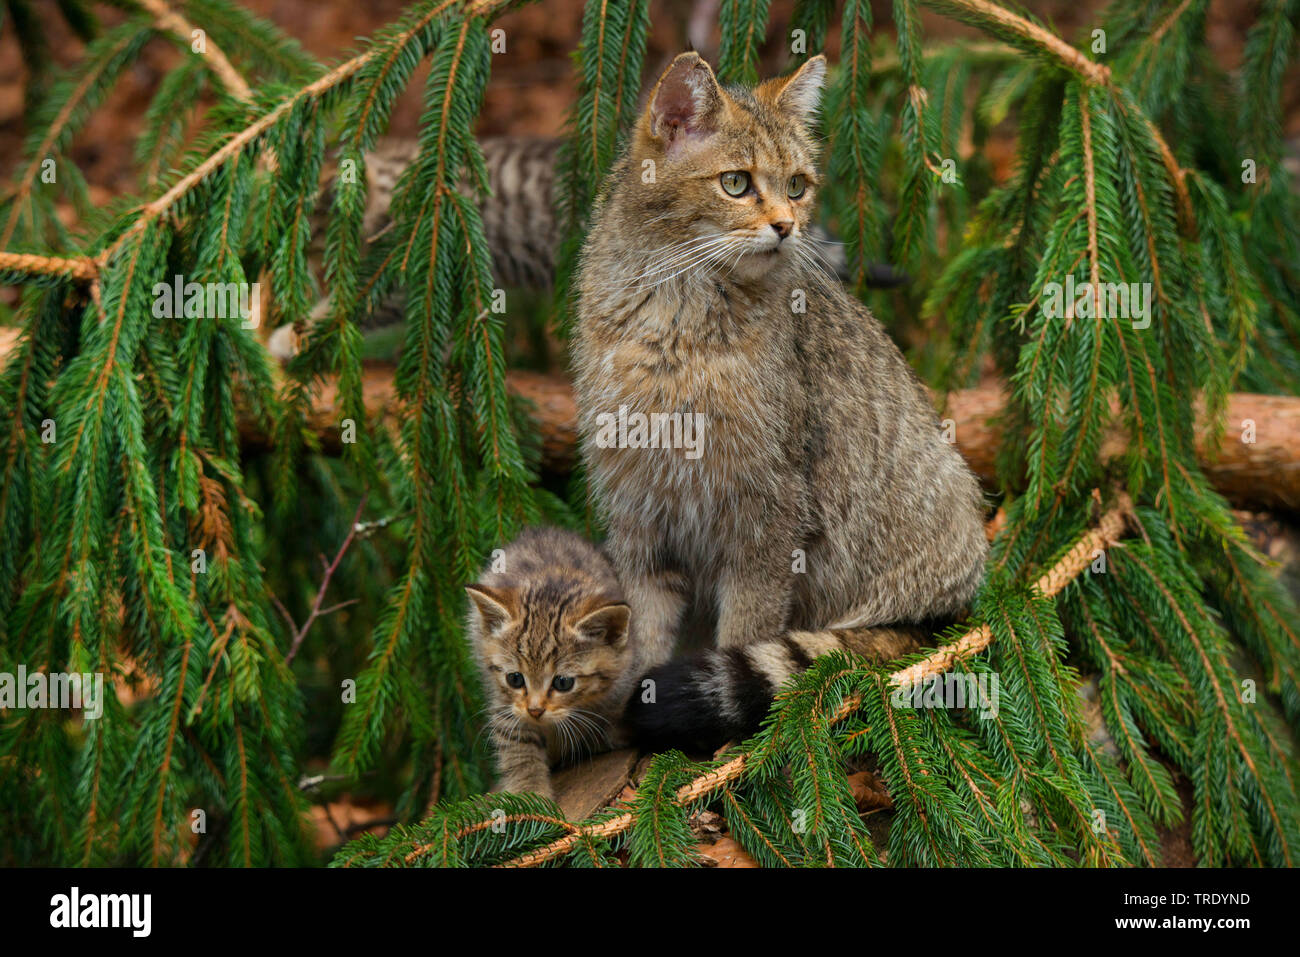 Chat Sauvage Européen, forêt wildcat (Felis silvestris silvestris), avec la direction générale de l'épinette sur un chaton, Allemagne Banque D'Images